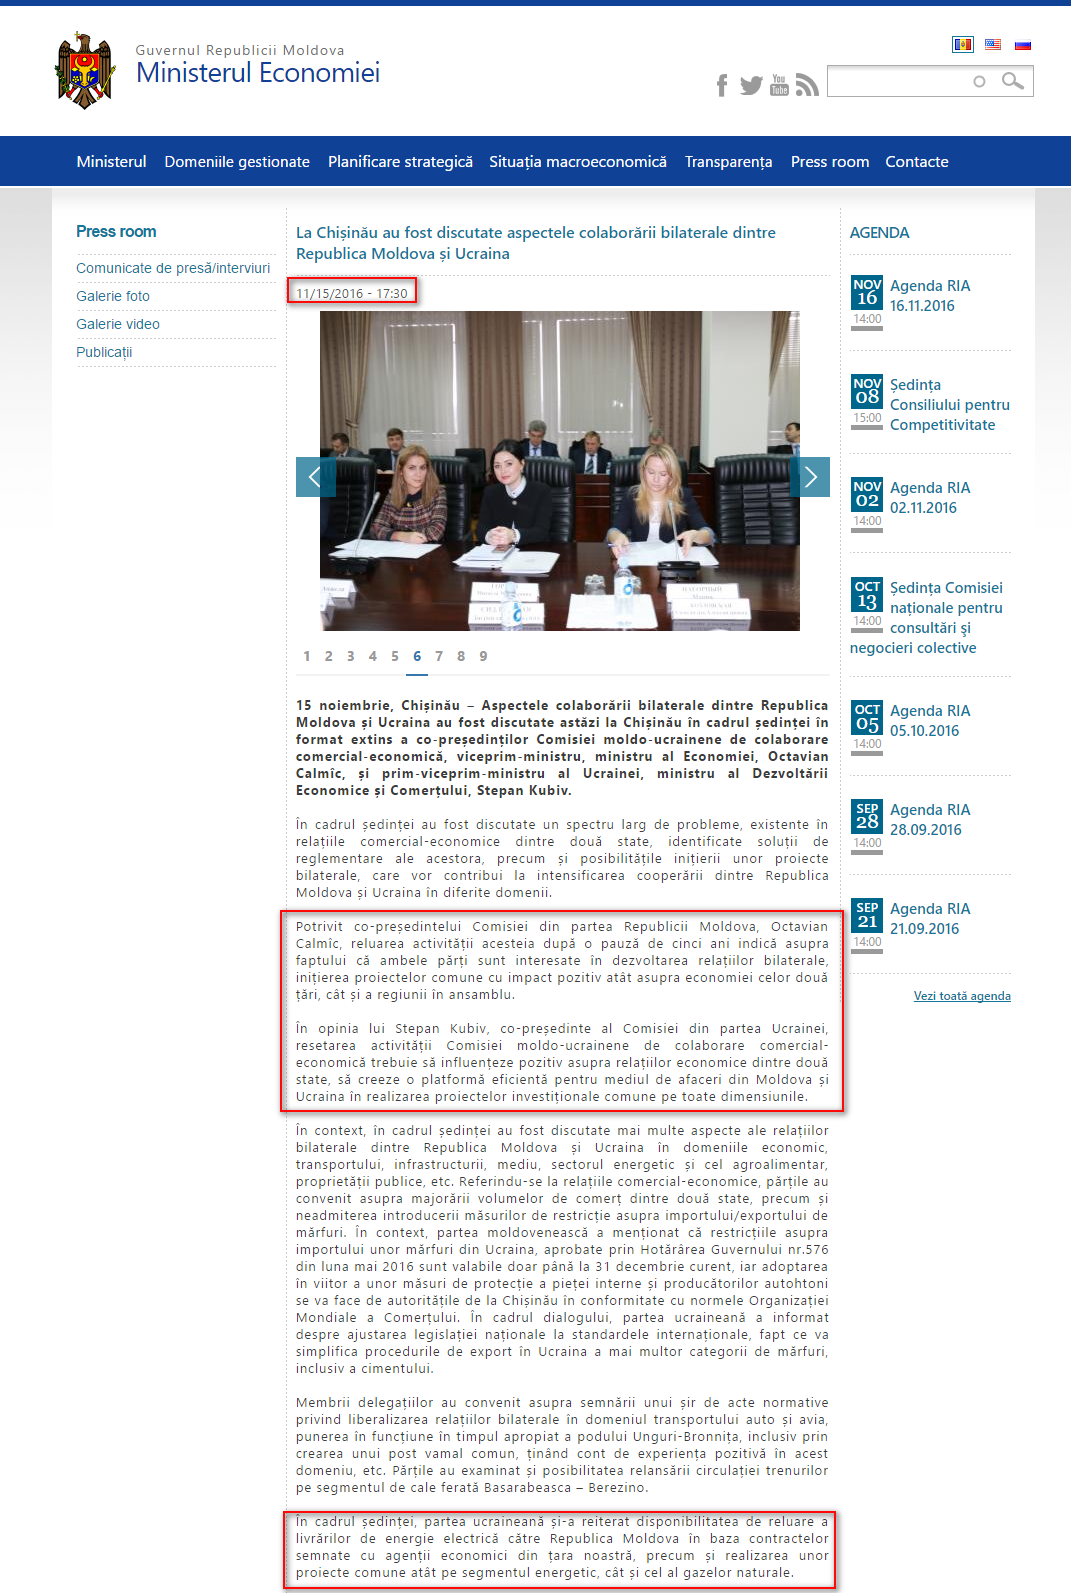 http://www.mec.gov.md/ro/content/la-chisinau-au-fost-discutate-aspectele-colaborarii-bilaterale-dintre-republica-moldova-si